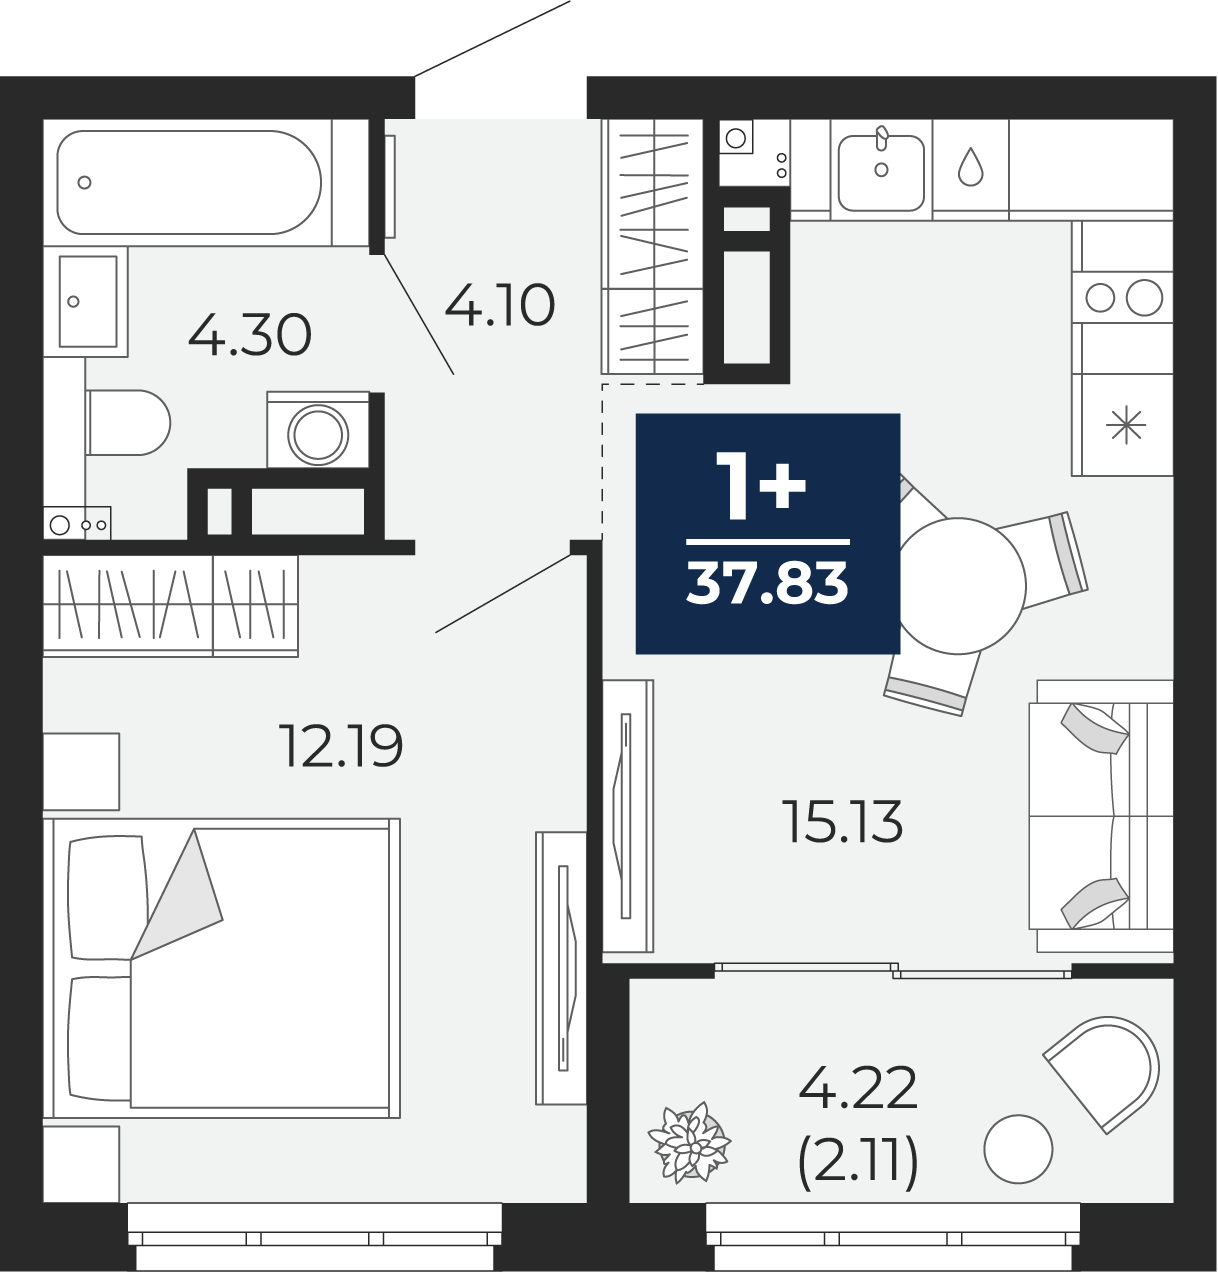 Квартира № 255, 1-комнатная, 37.83 кв. м, 8 этаж